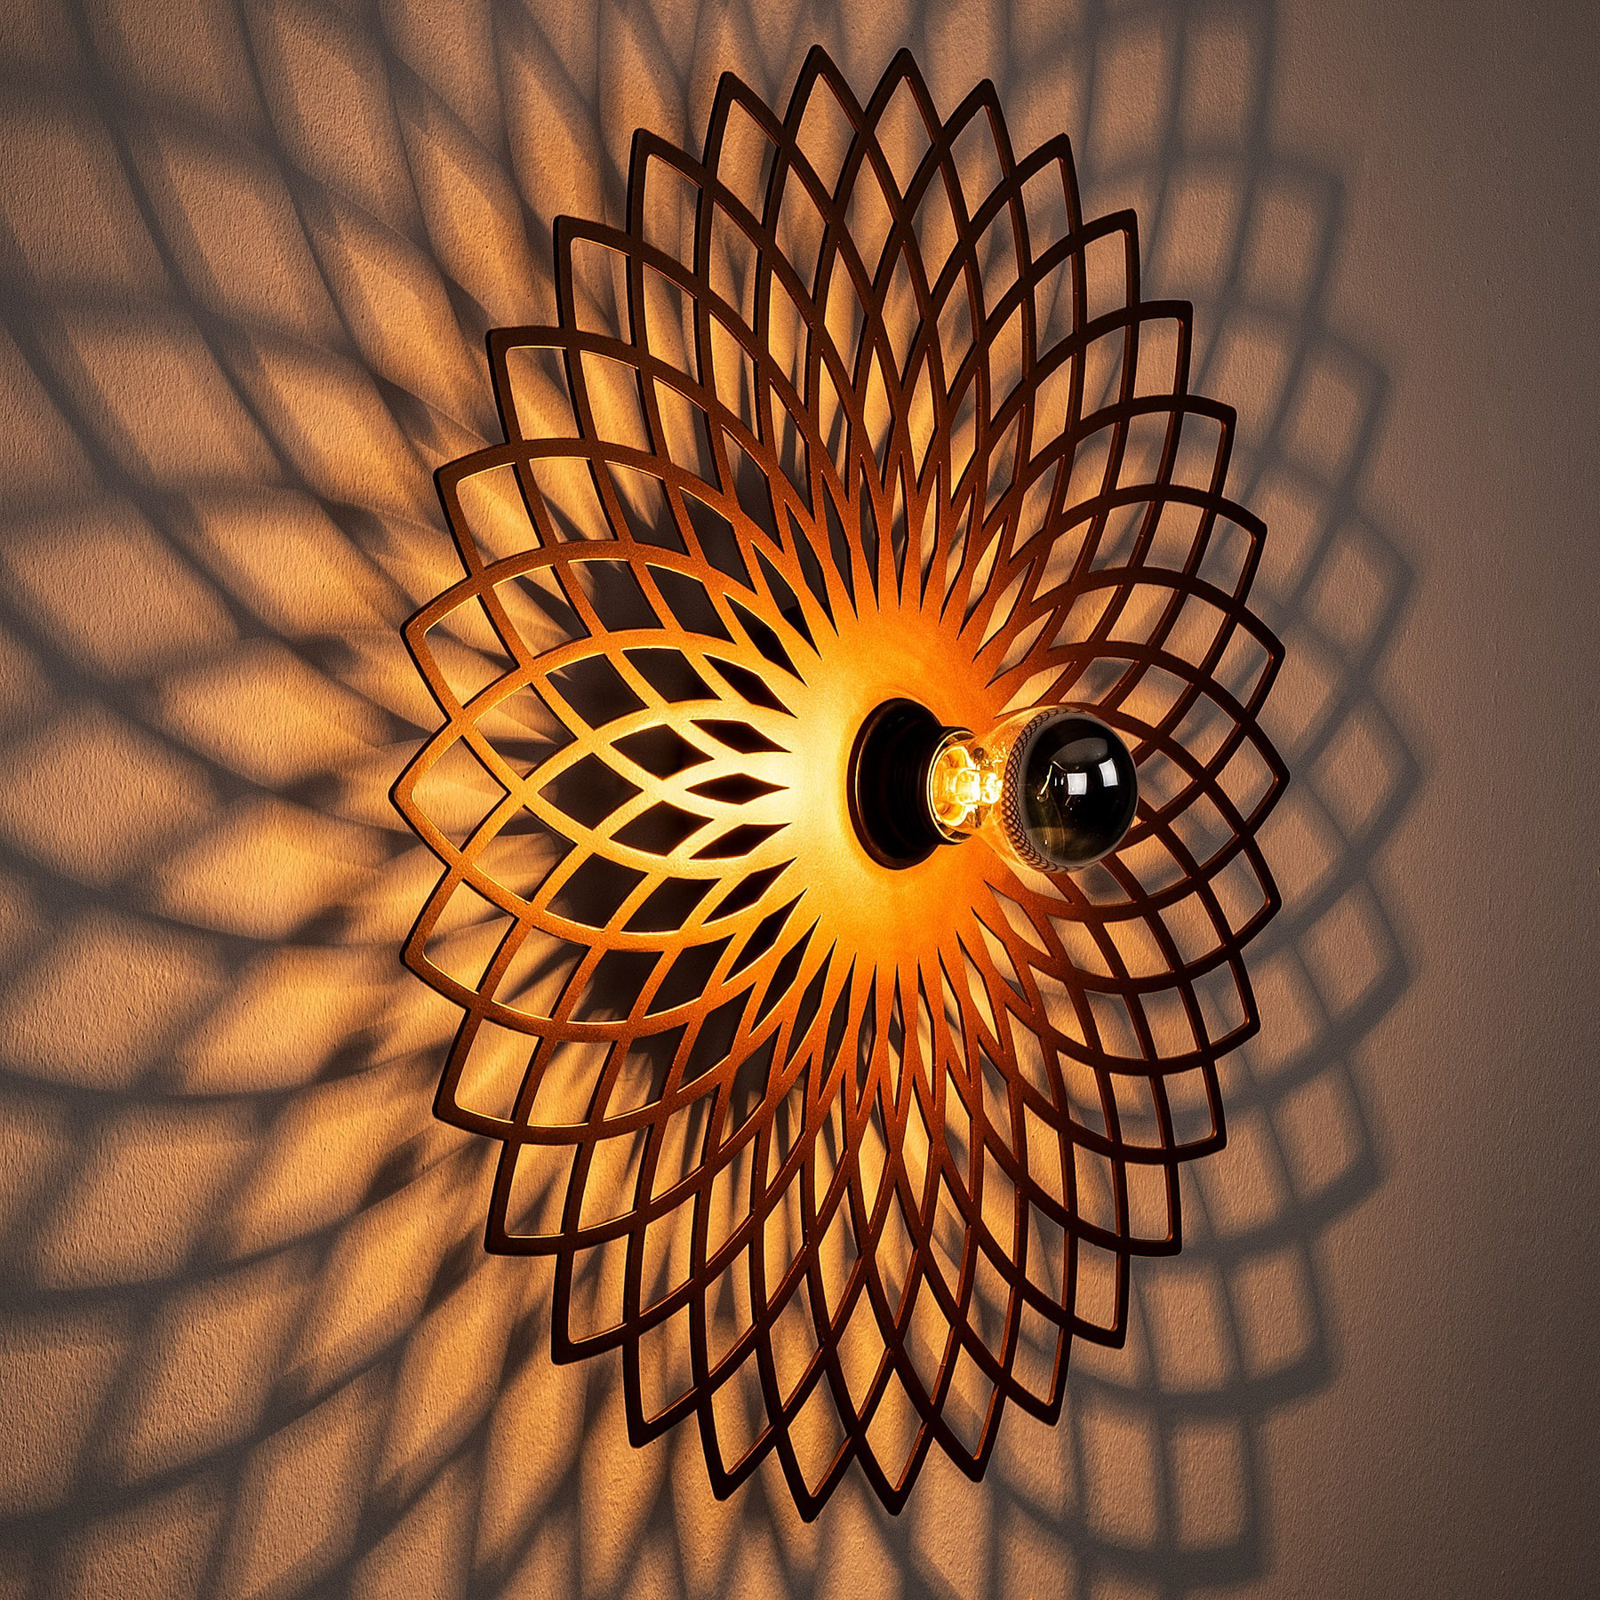 Fellini MR-988 wall lamp hole pattern Ø50cm copper